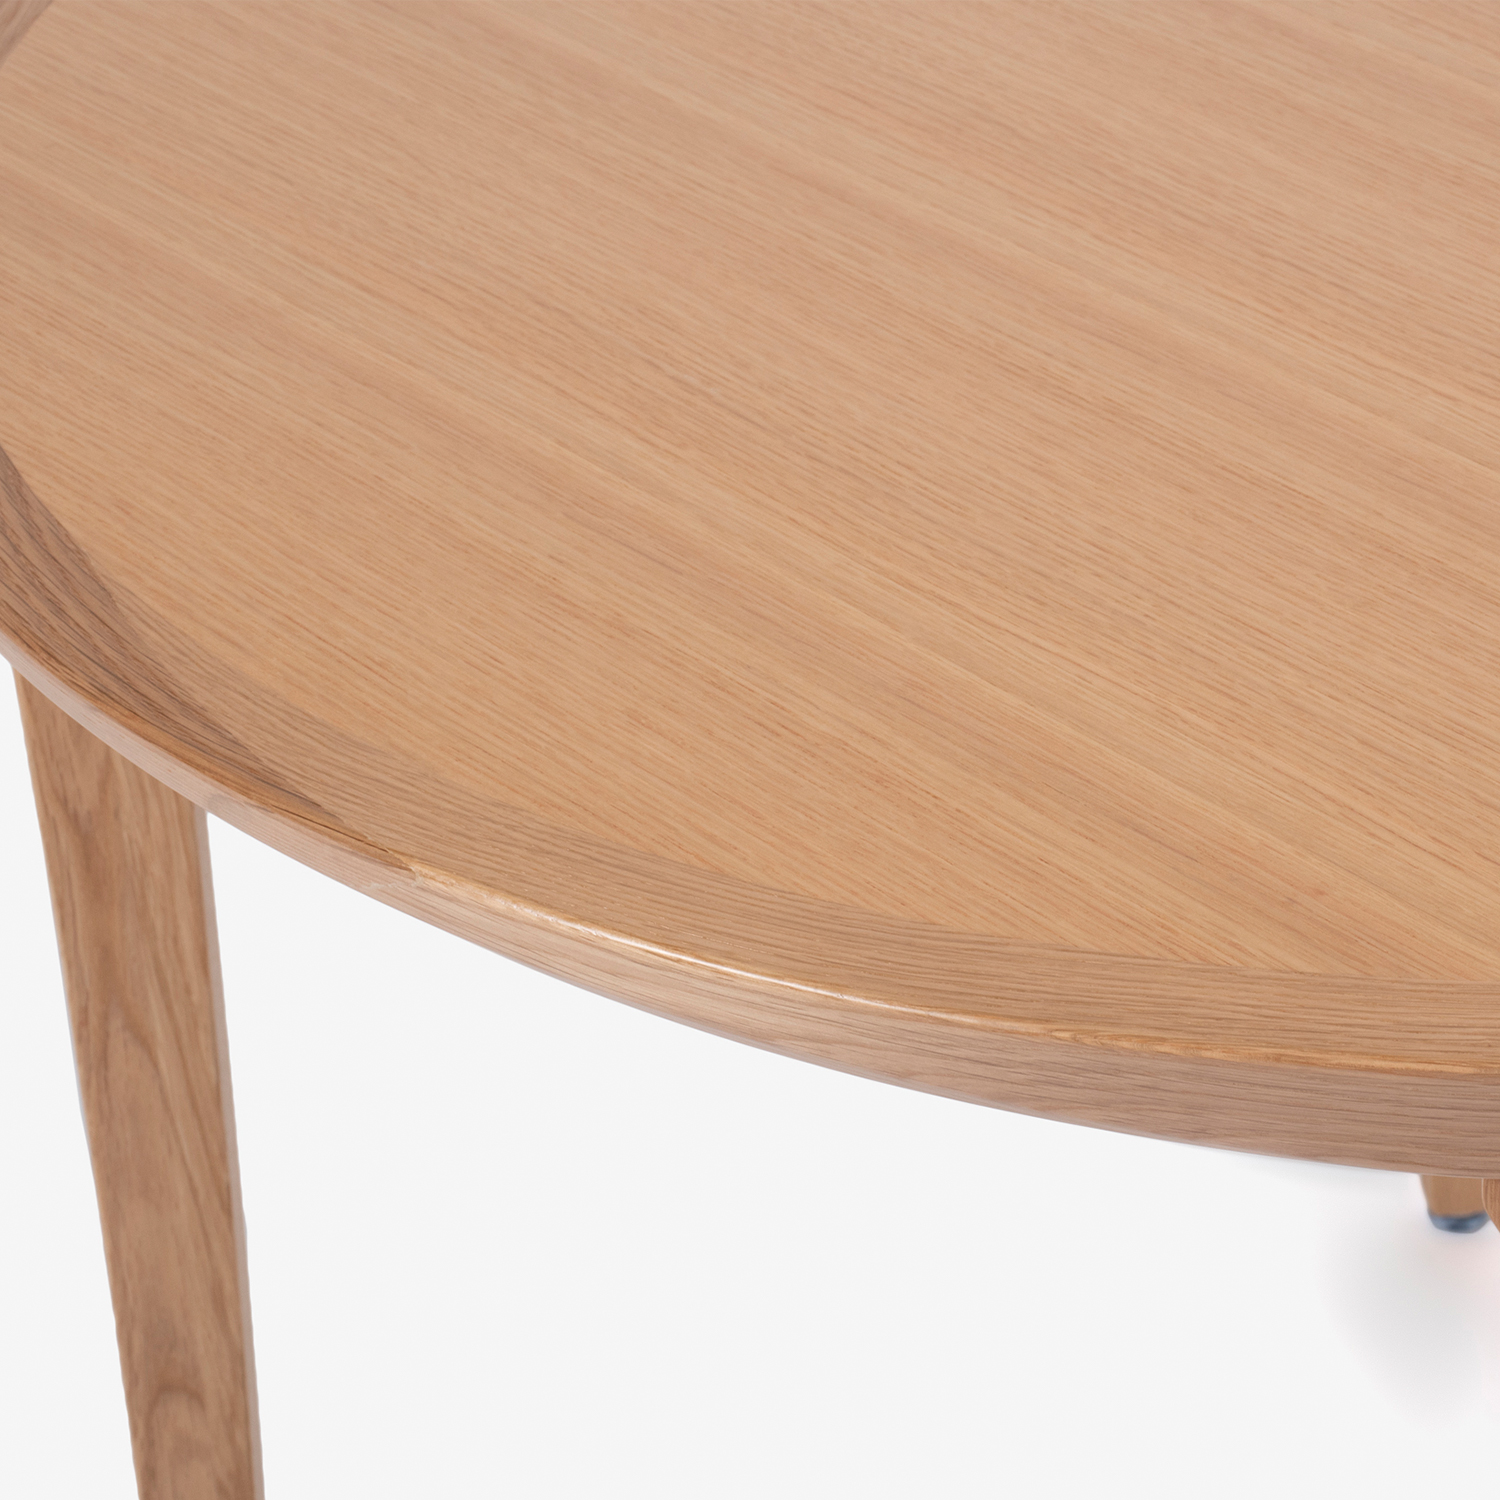 秋田木工 ダイニングテーブル「N-T005」丸型 ナラ材ホワイトオーク色 全2サイズ【受注生産品】